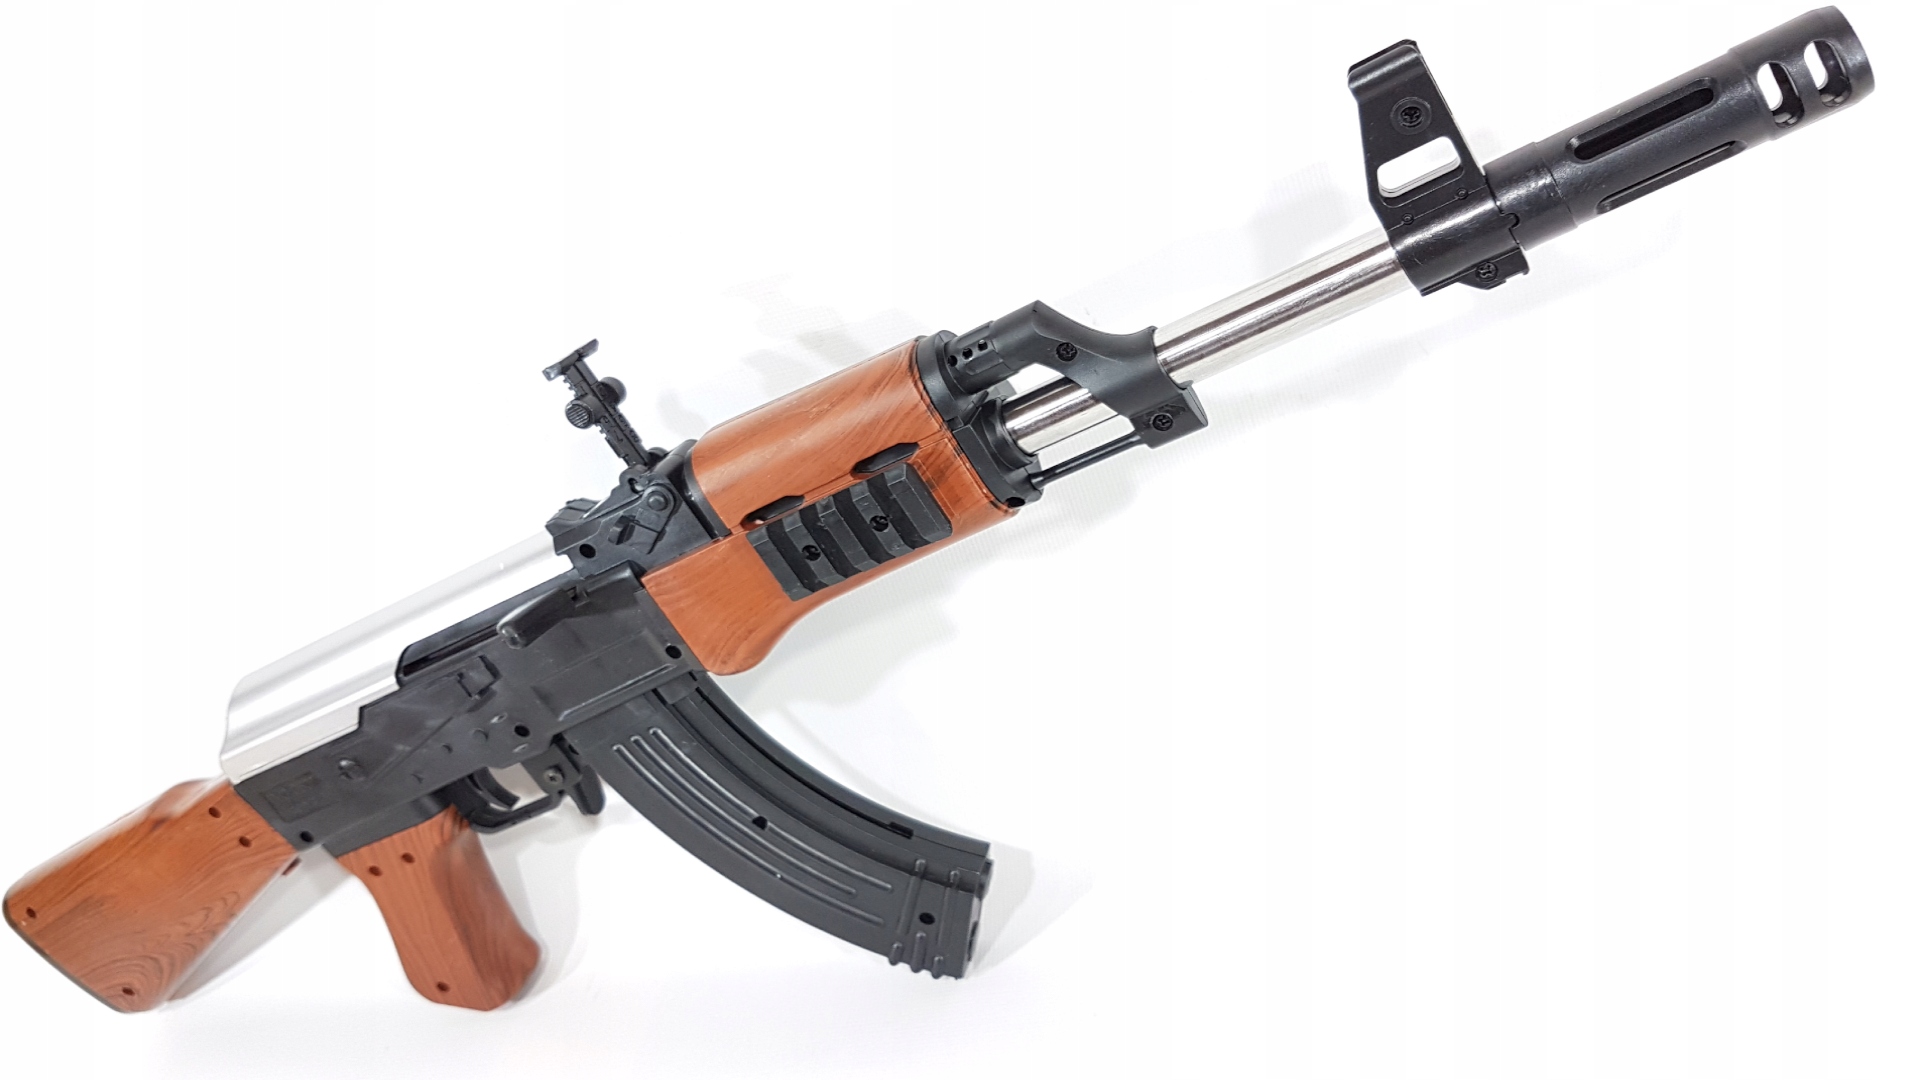 PUŠKA AK-47 KALASZNIKOW ASG BALLS + 2 štíty Šírka produktu 58 cm